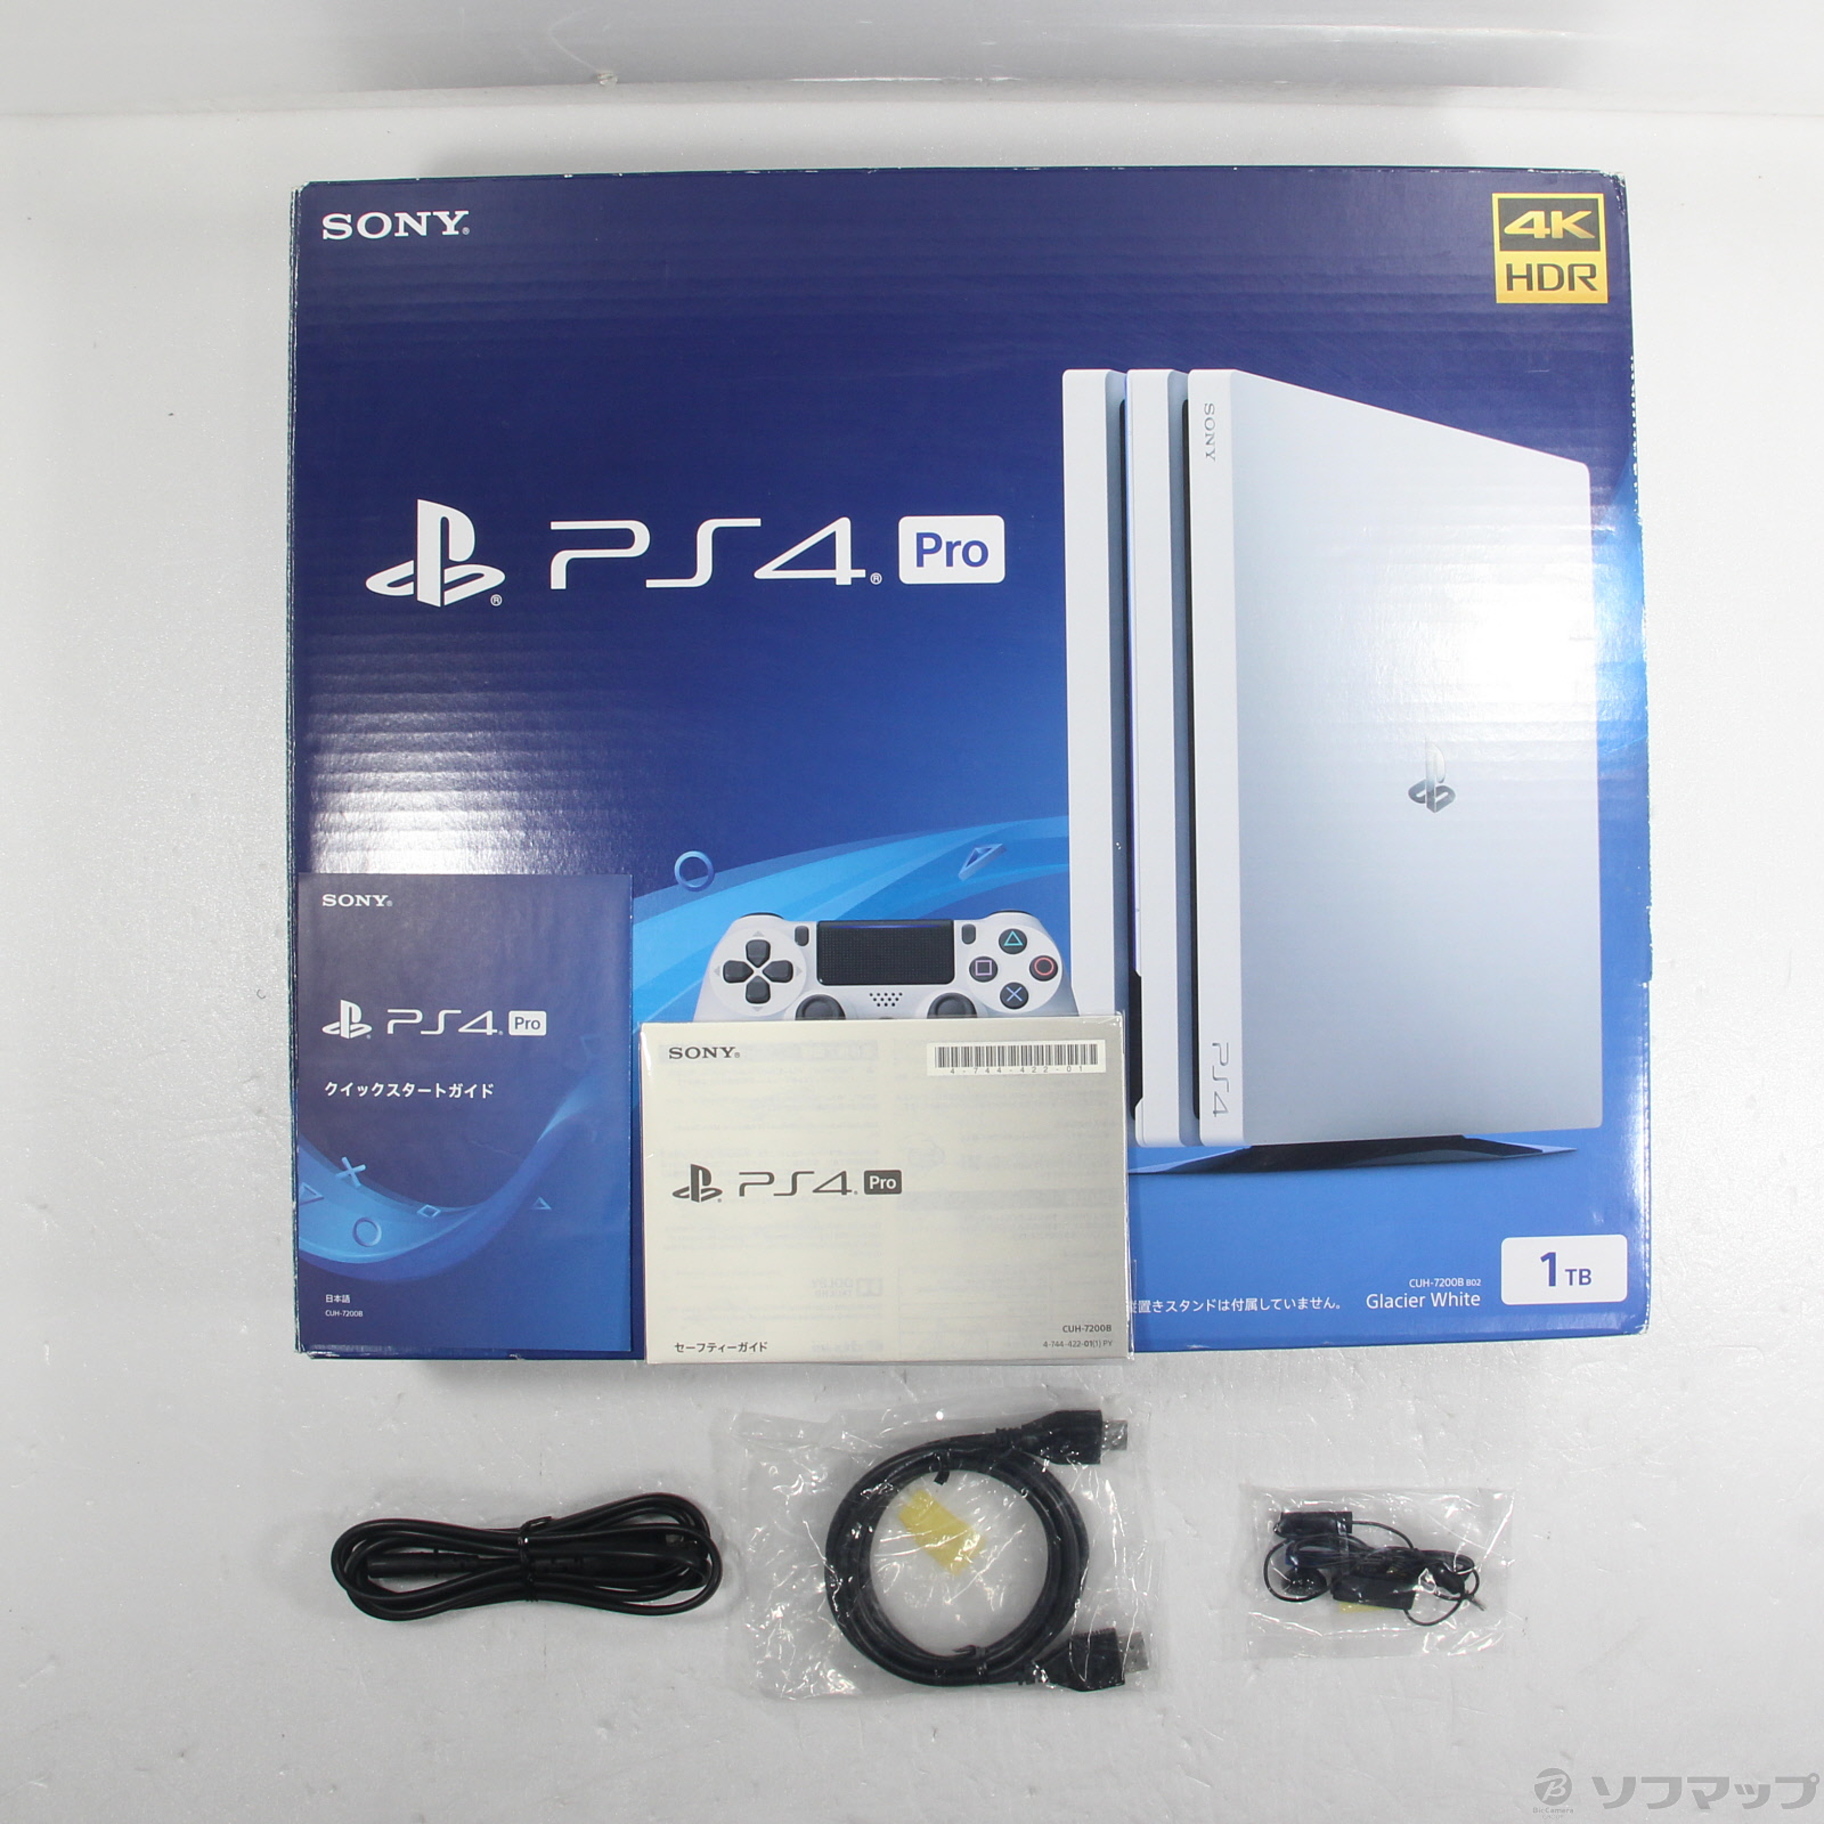 中古品〕 PlayStation 4 Pro グレイシャー・ホワイト 1TB CUH-7200BB02 